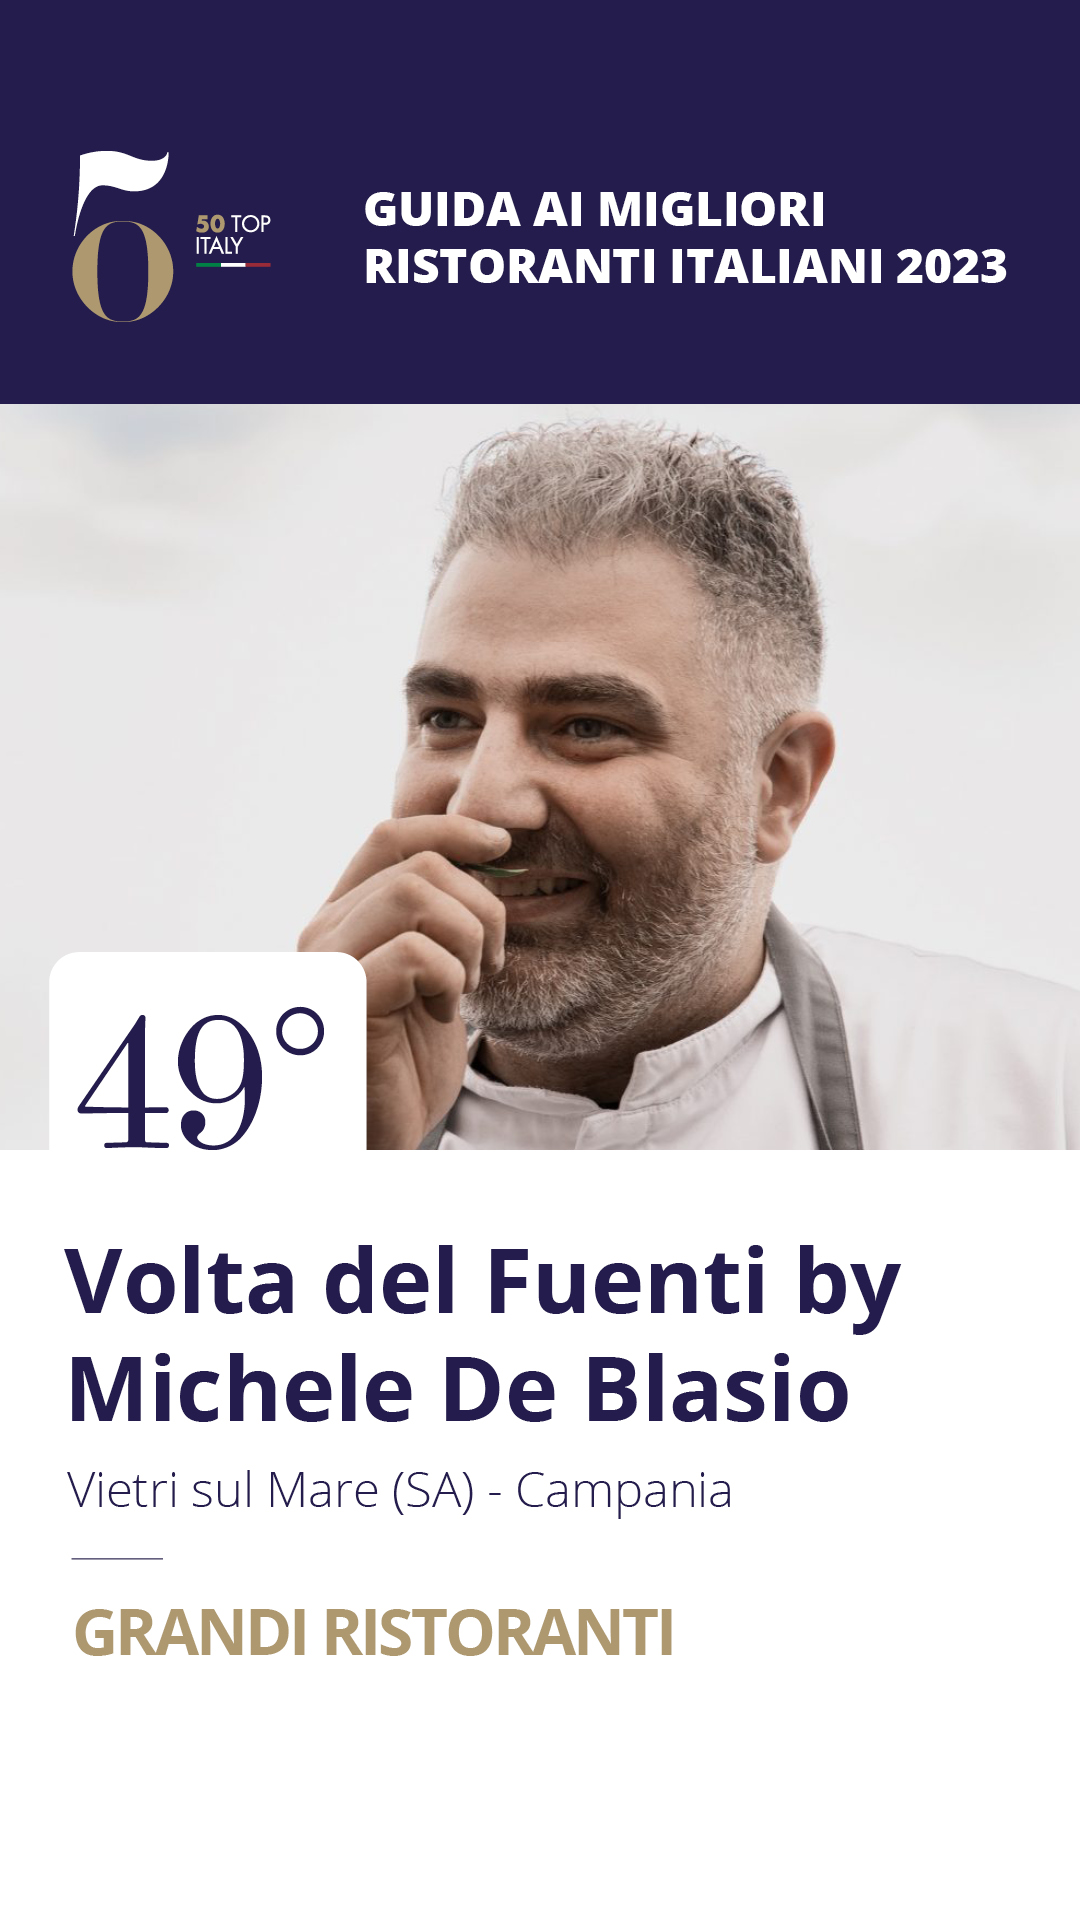 49 - Volta del Fuenti by Michele De Blasio